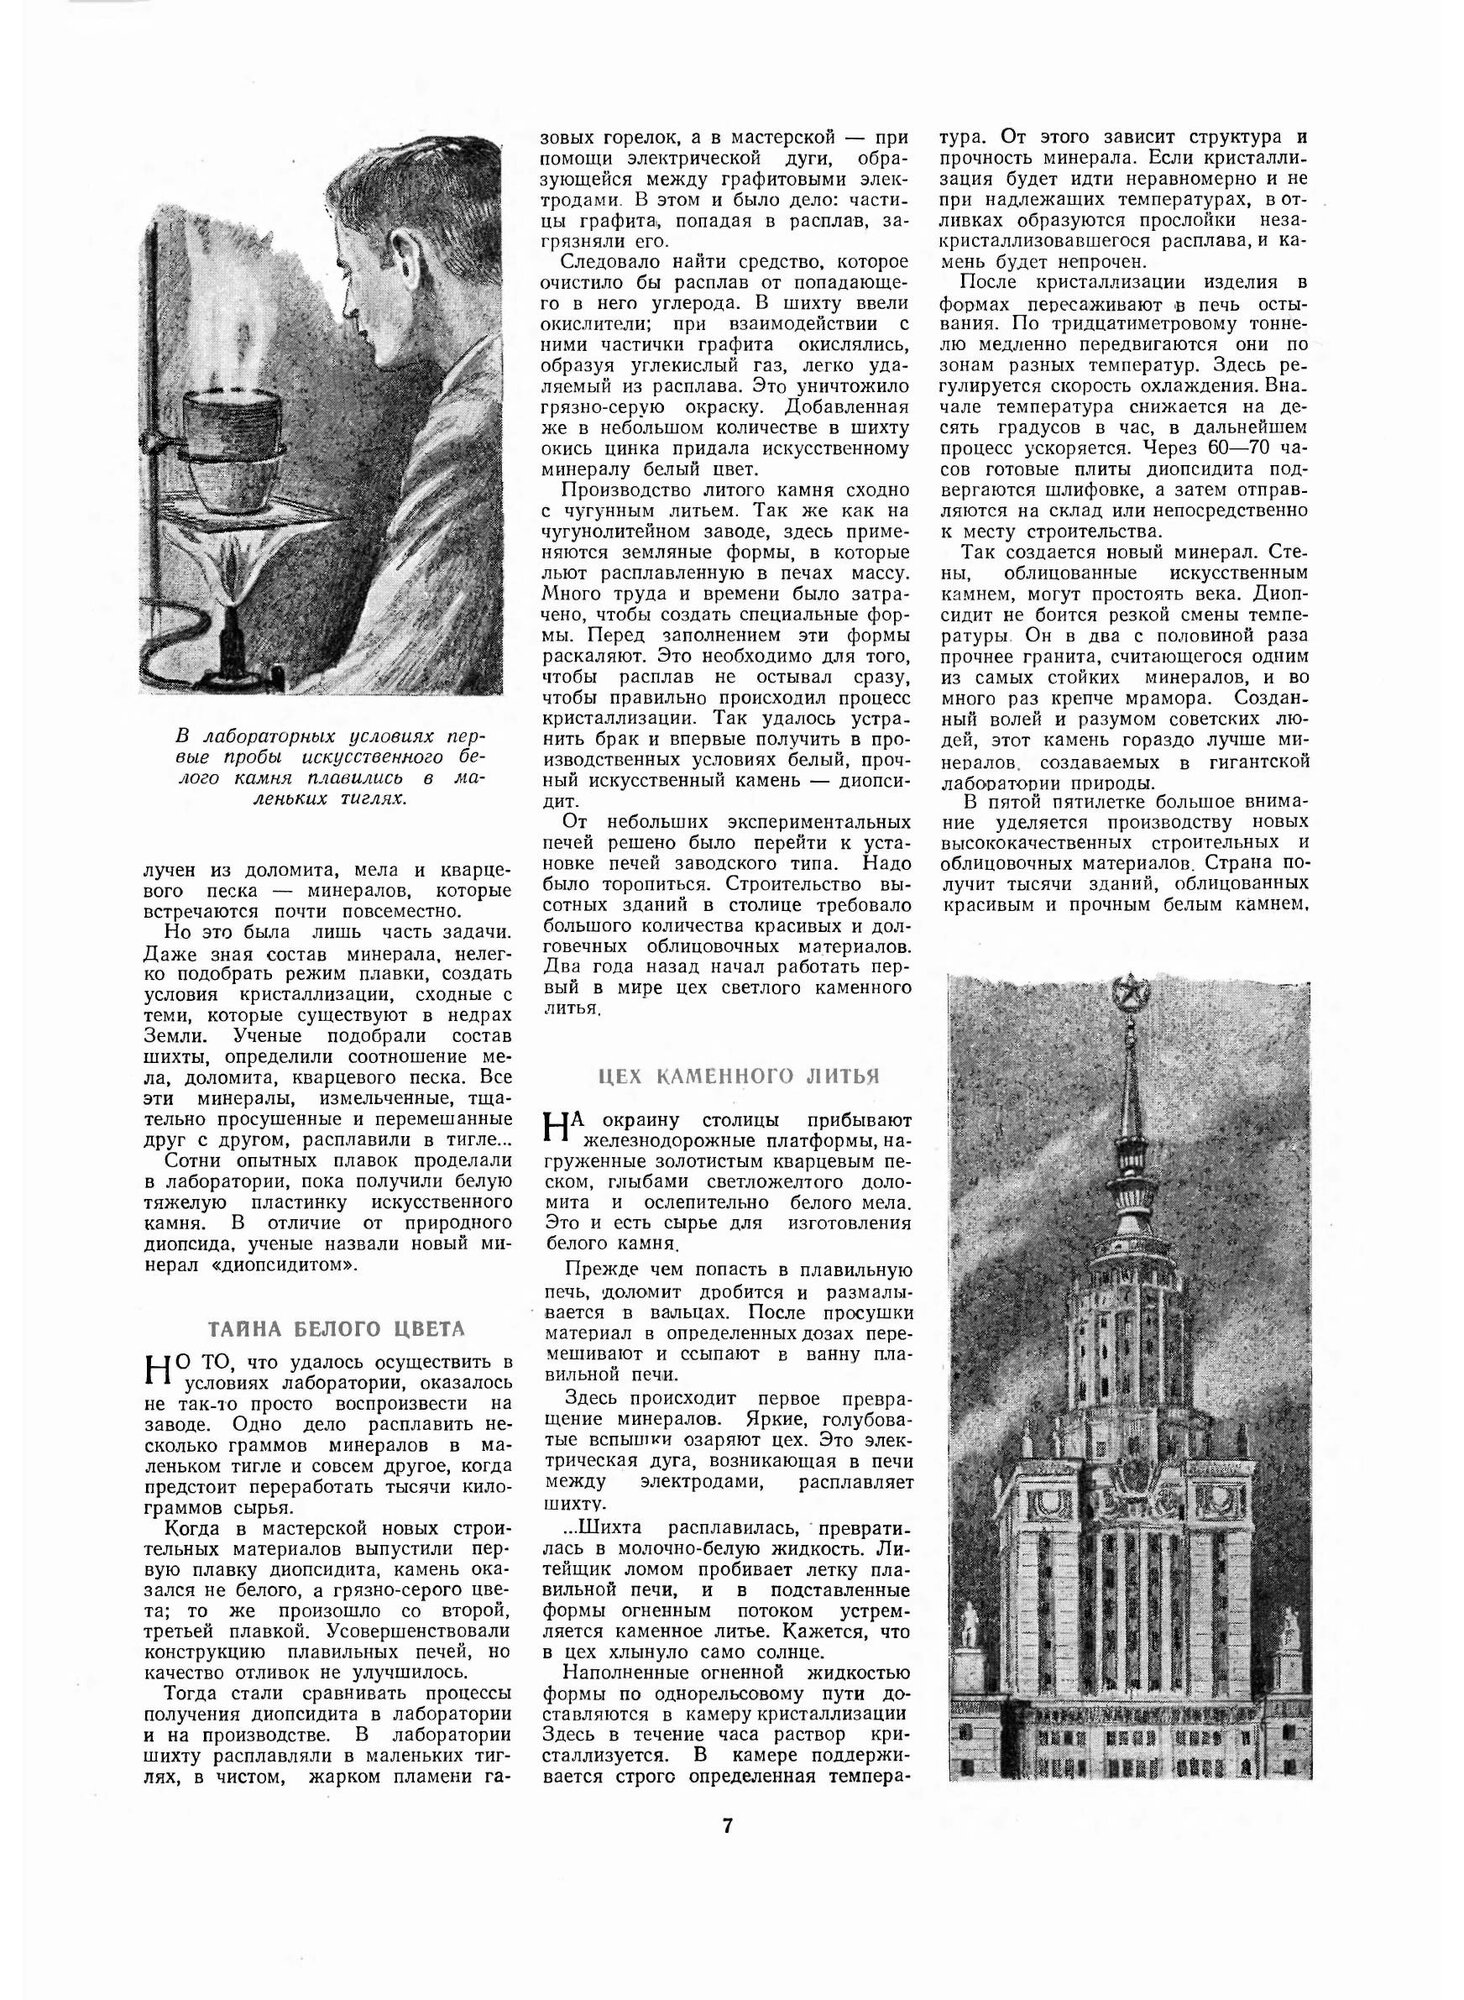 Журнал "Знание сила". №05, 1953 - фото №8